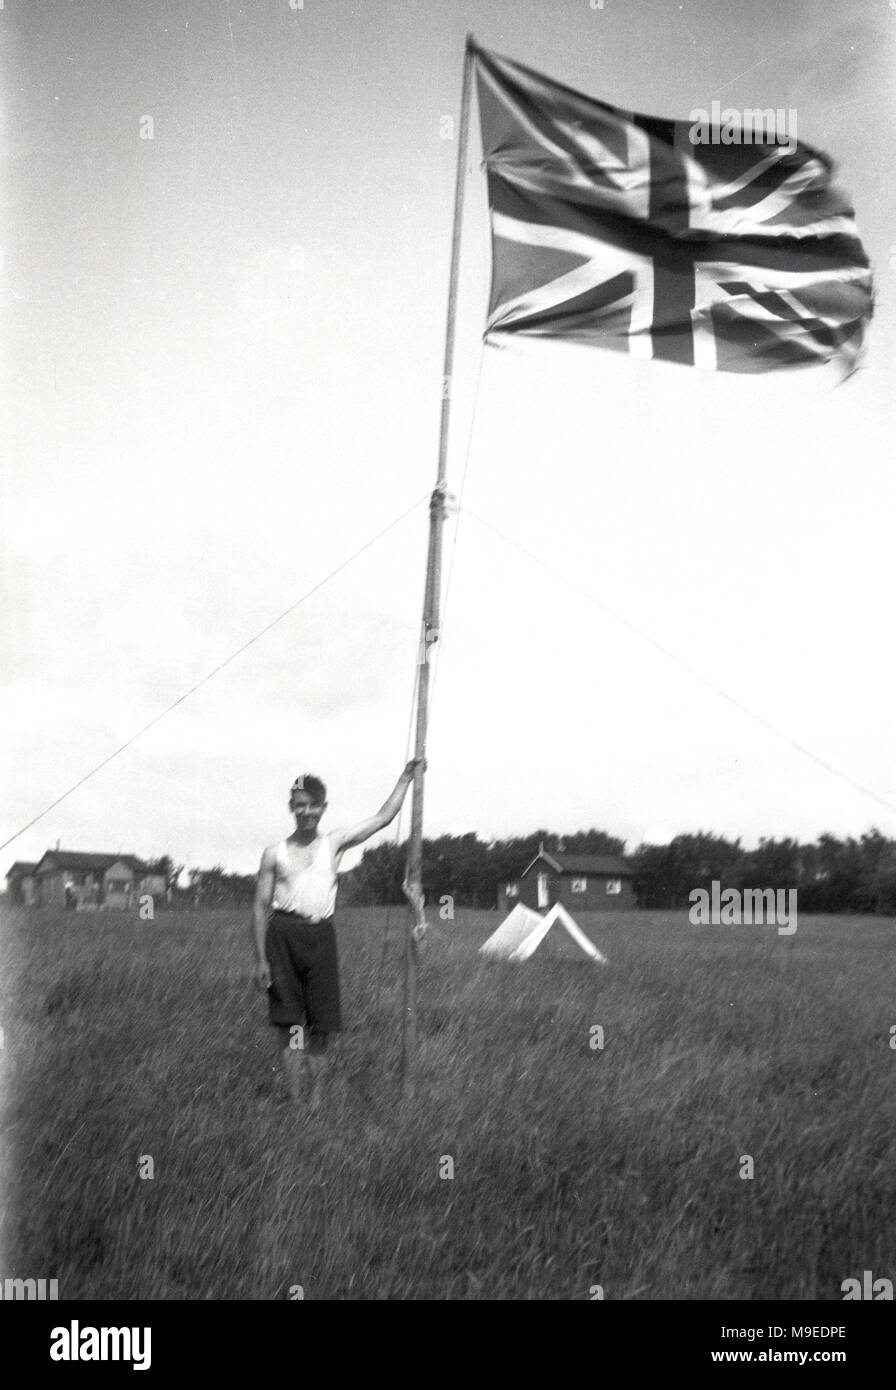 1934, historique, un jeune scout dans les champs à un camp scout à Dublin, Irlande, se dresse à côté de poudly de hauteur mât tenant une Union Jack flag/ Banque D'Images